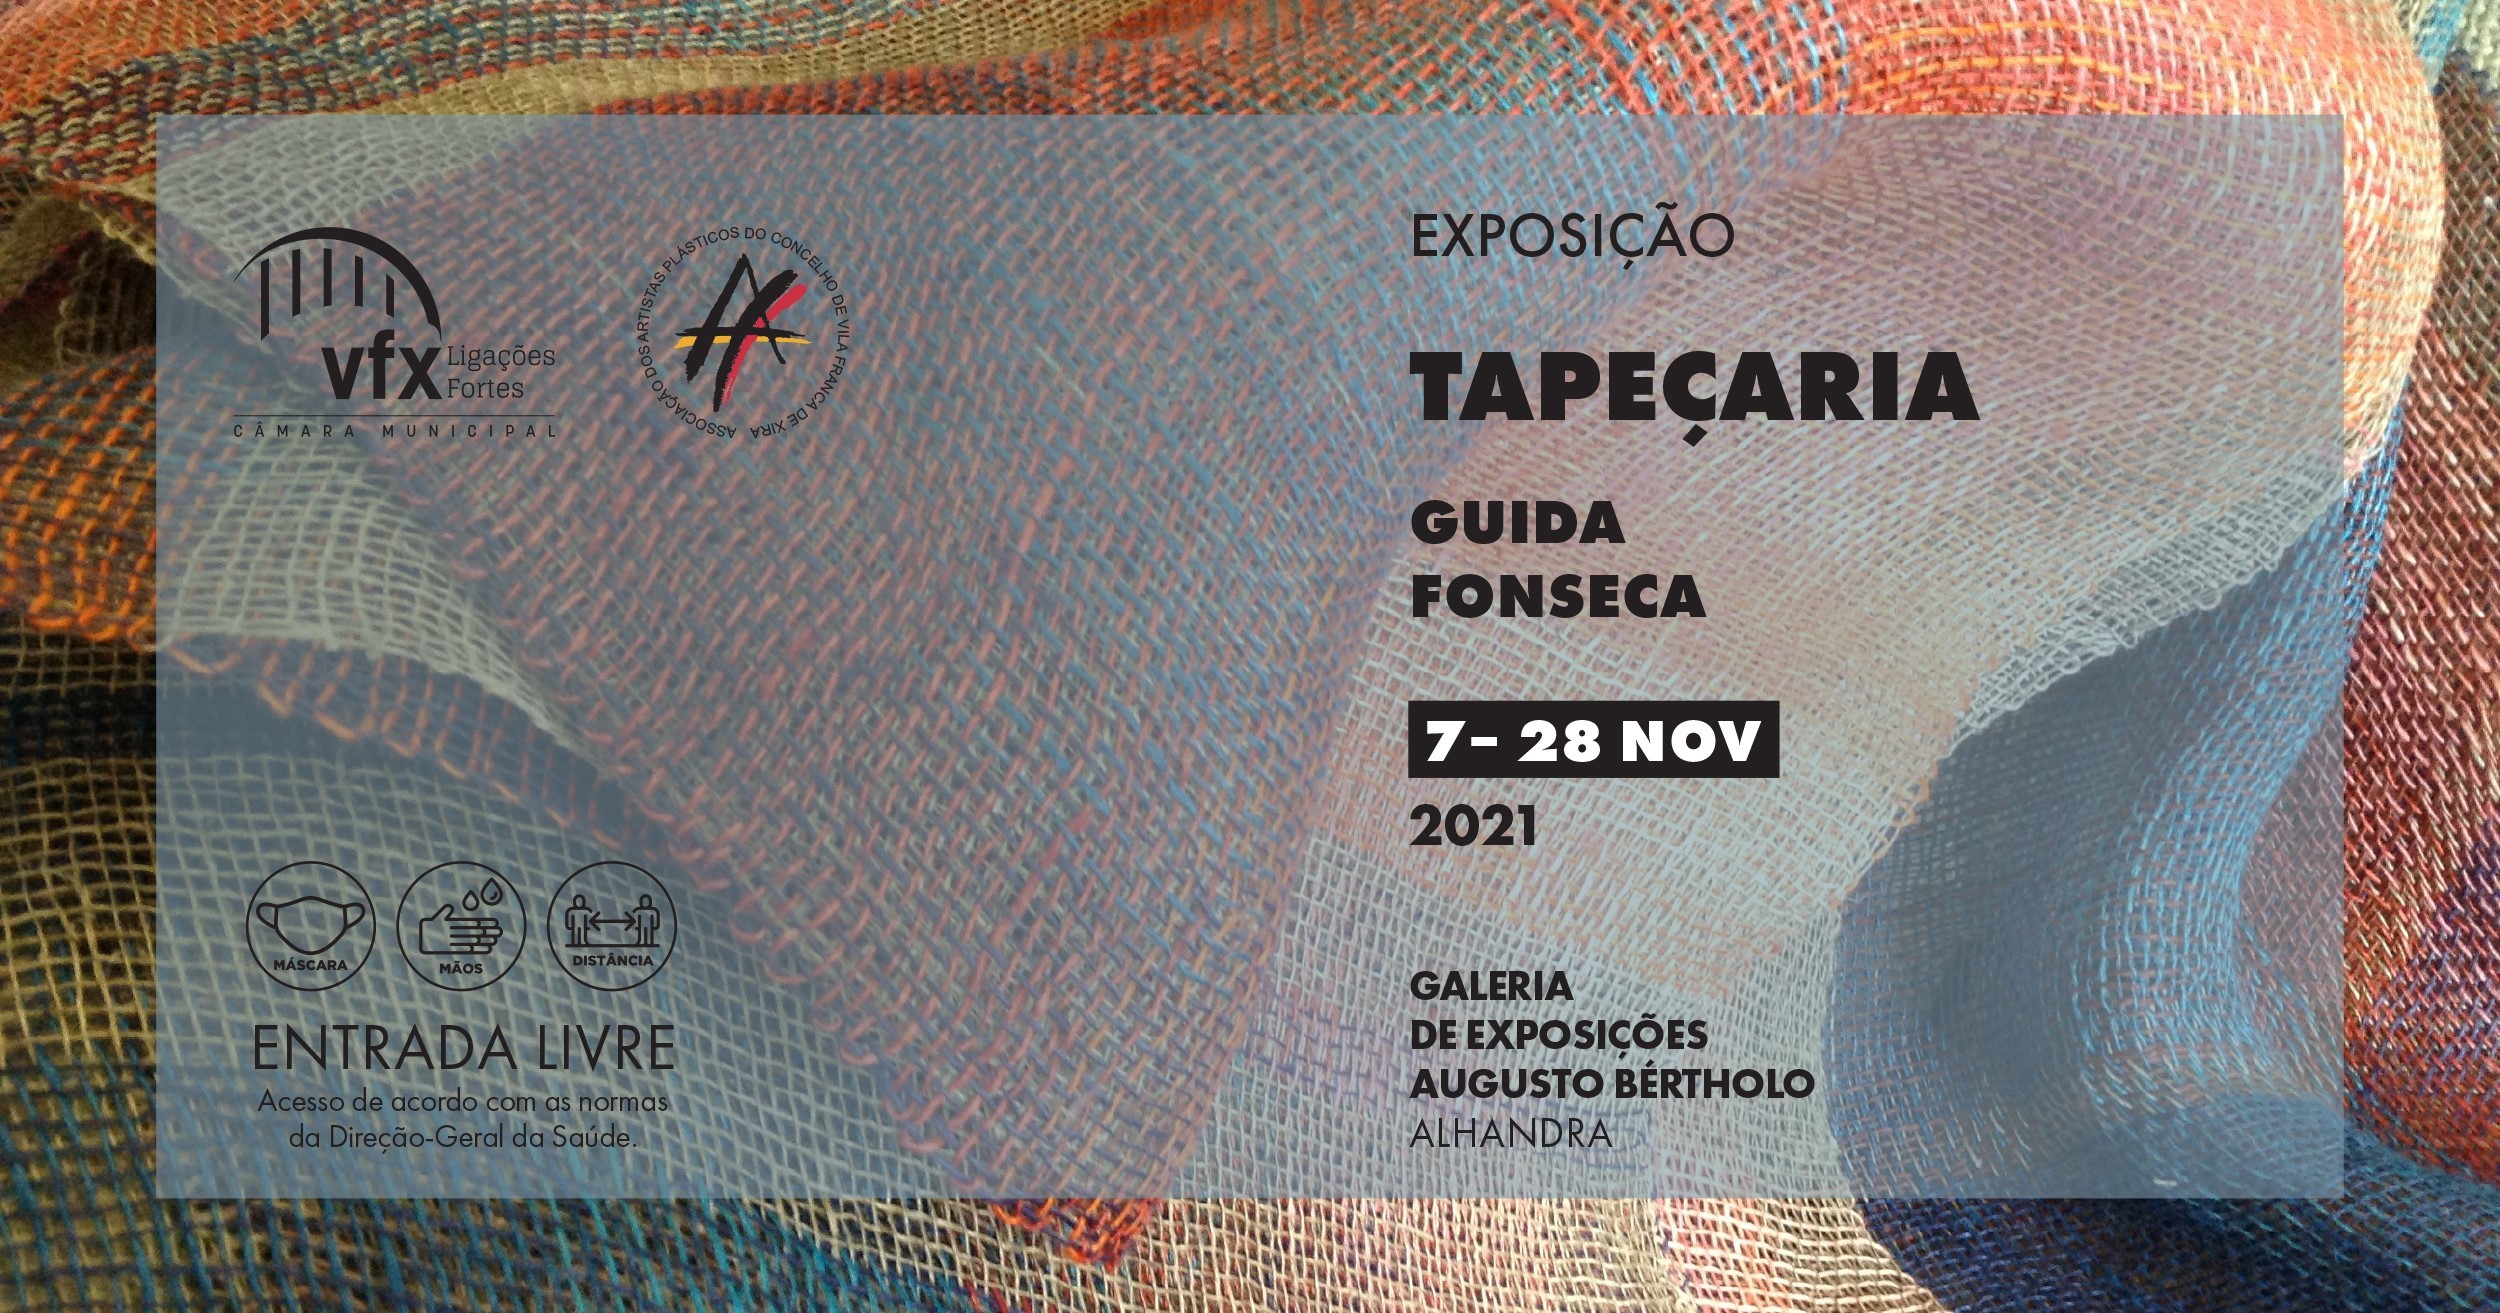 Exposição "Tapeçaria", de Guida Fonseca